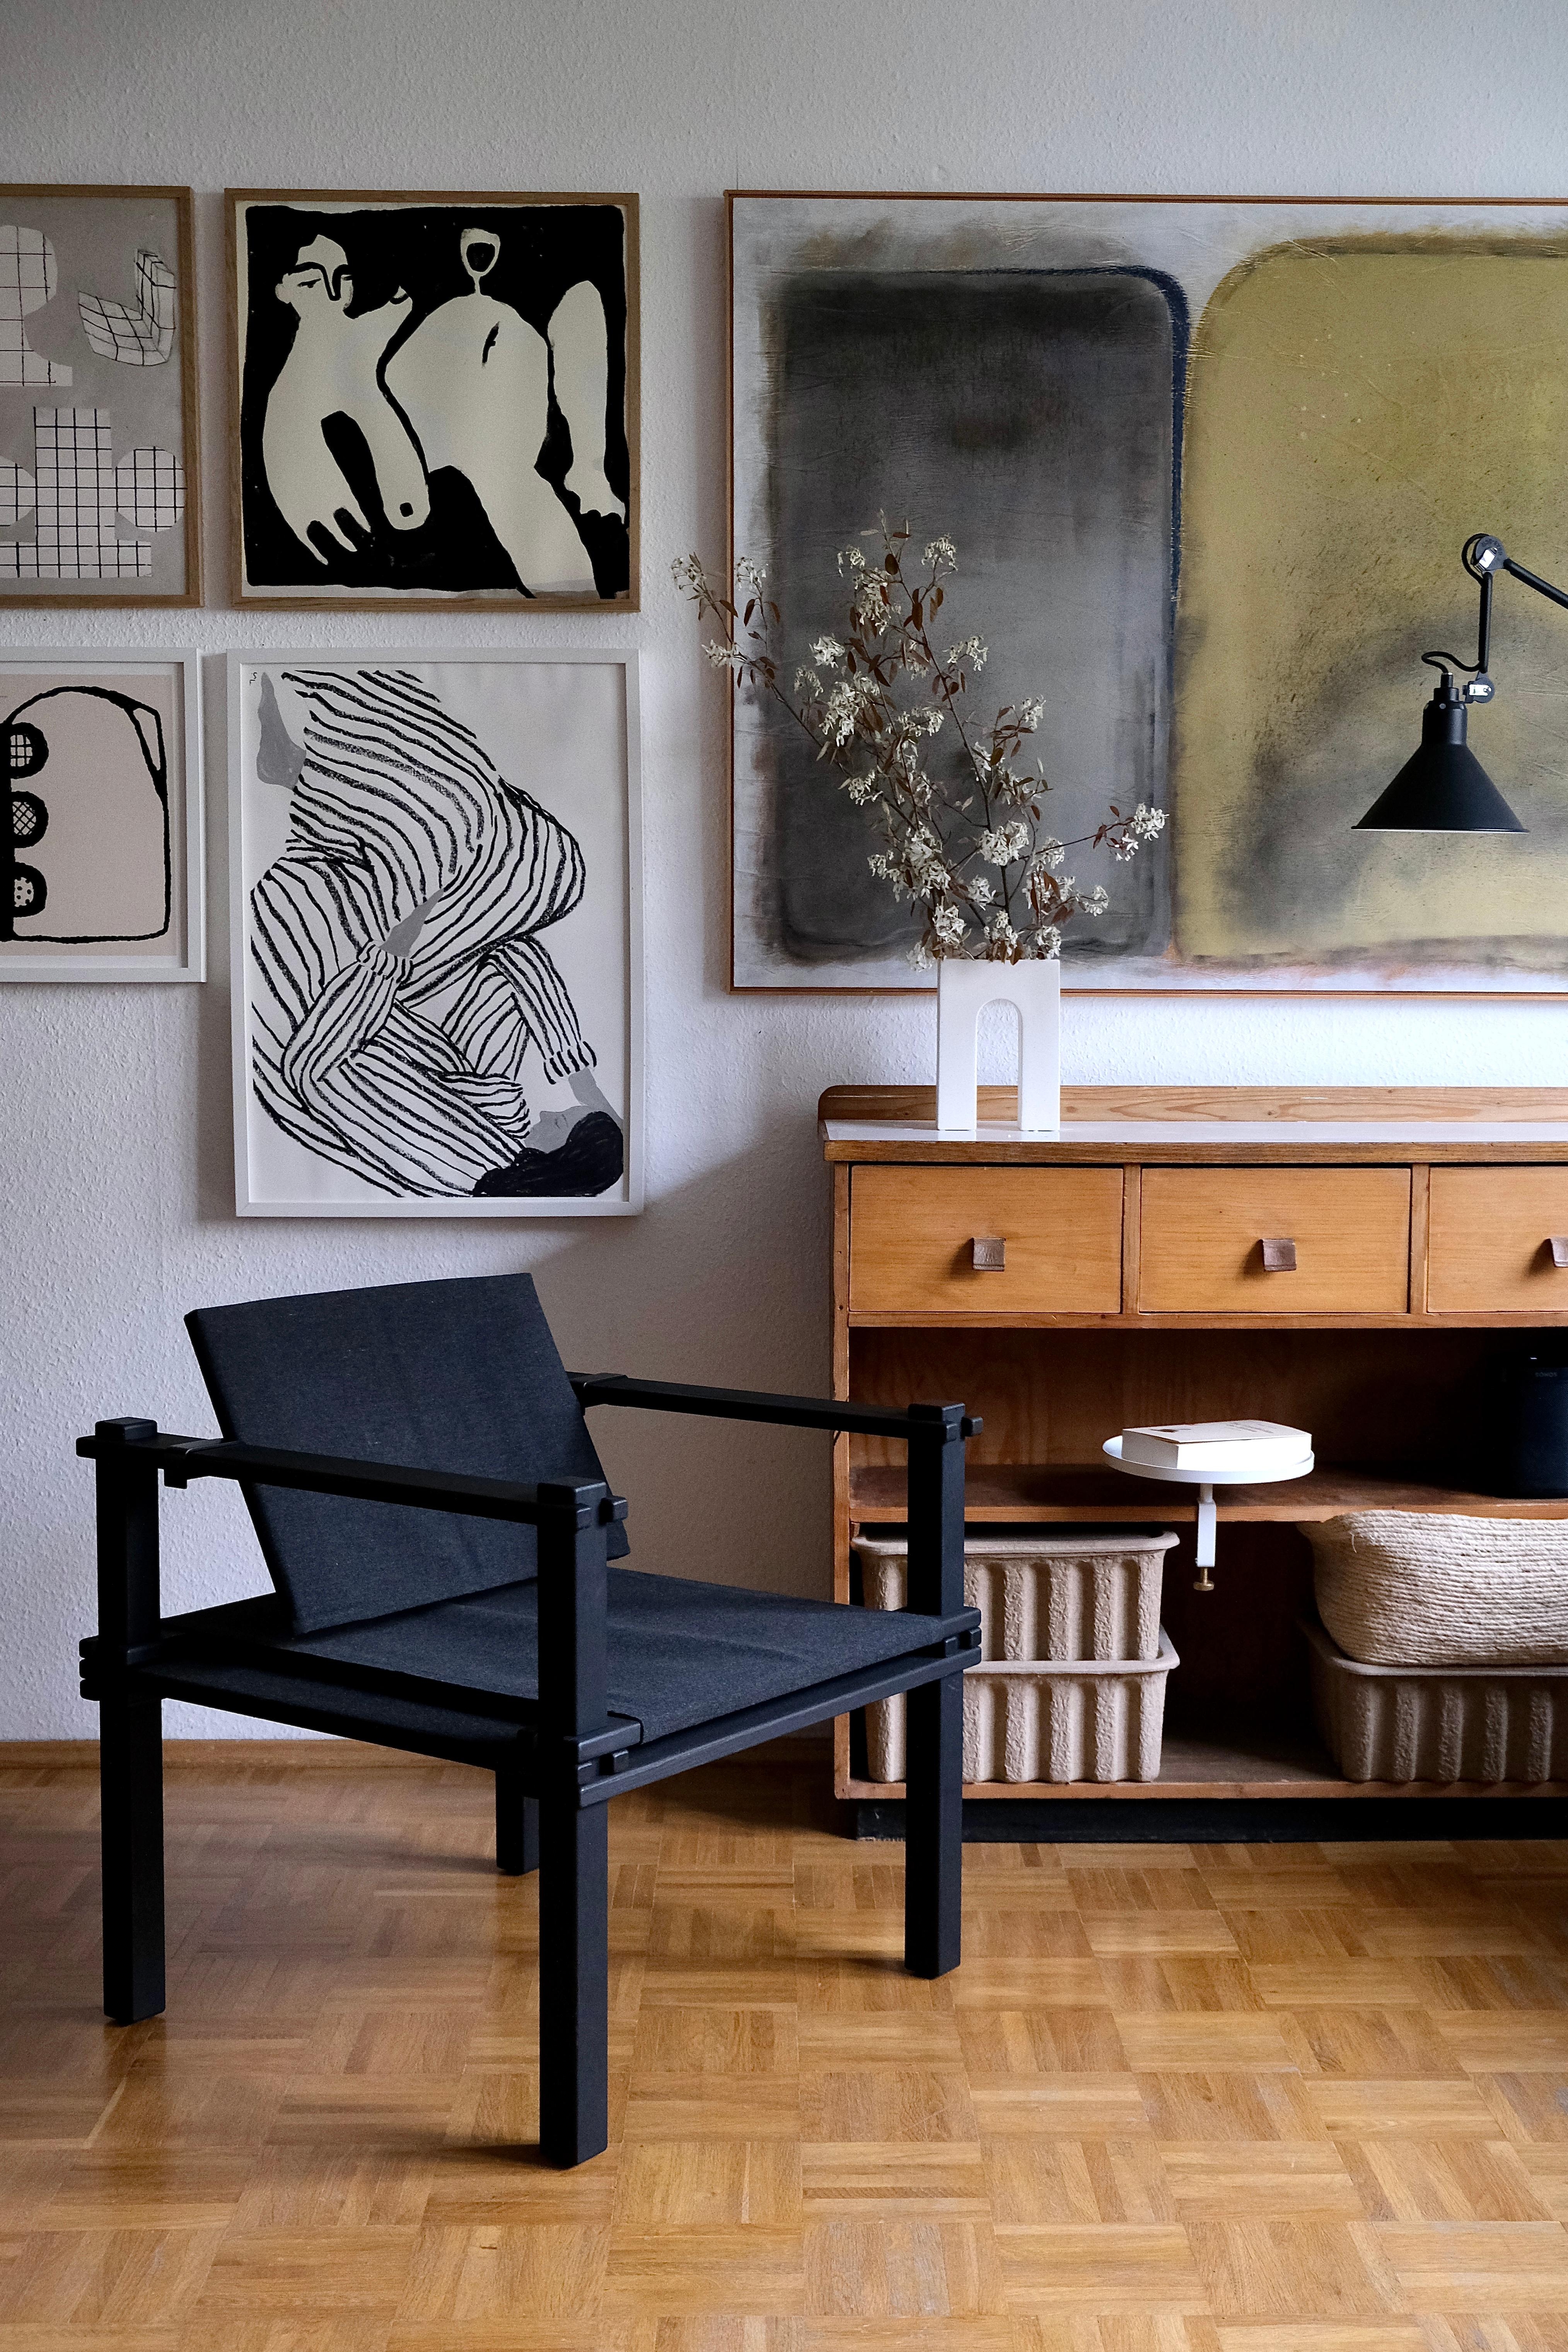 Die Kombination von Alt und Neu, Möbel mit Charakter und Designstücke mag ich besonders gerne.
#wohnzimmer #farmerchair